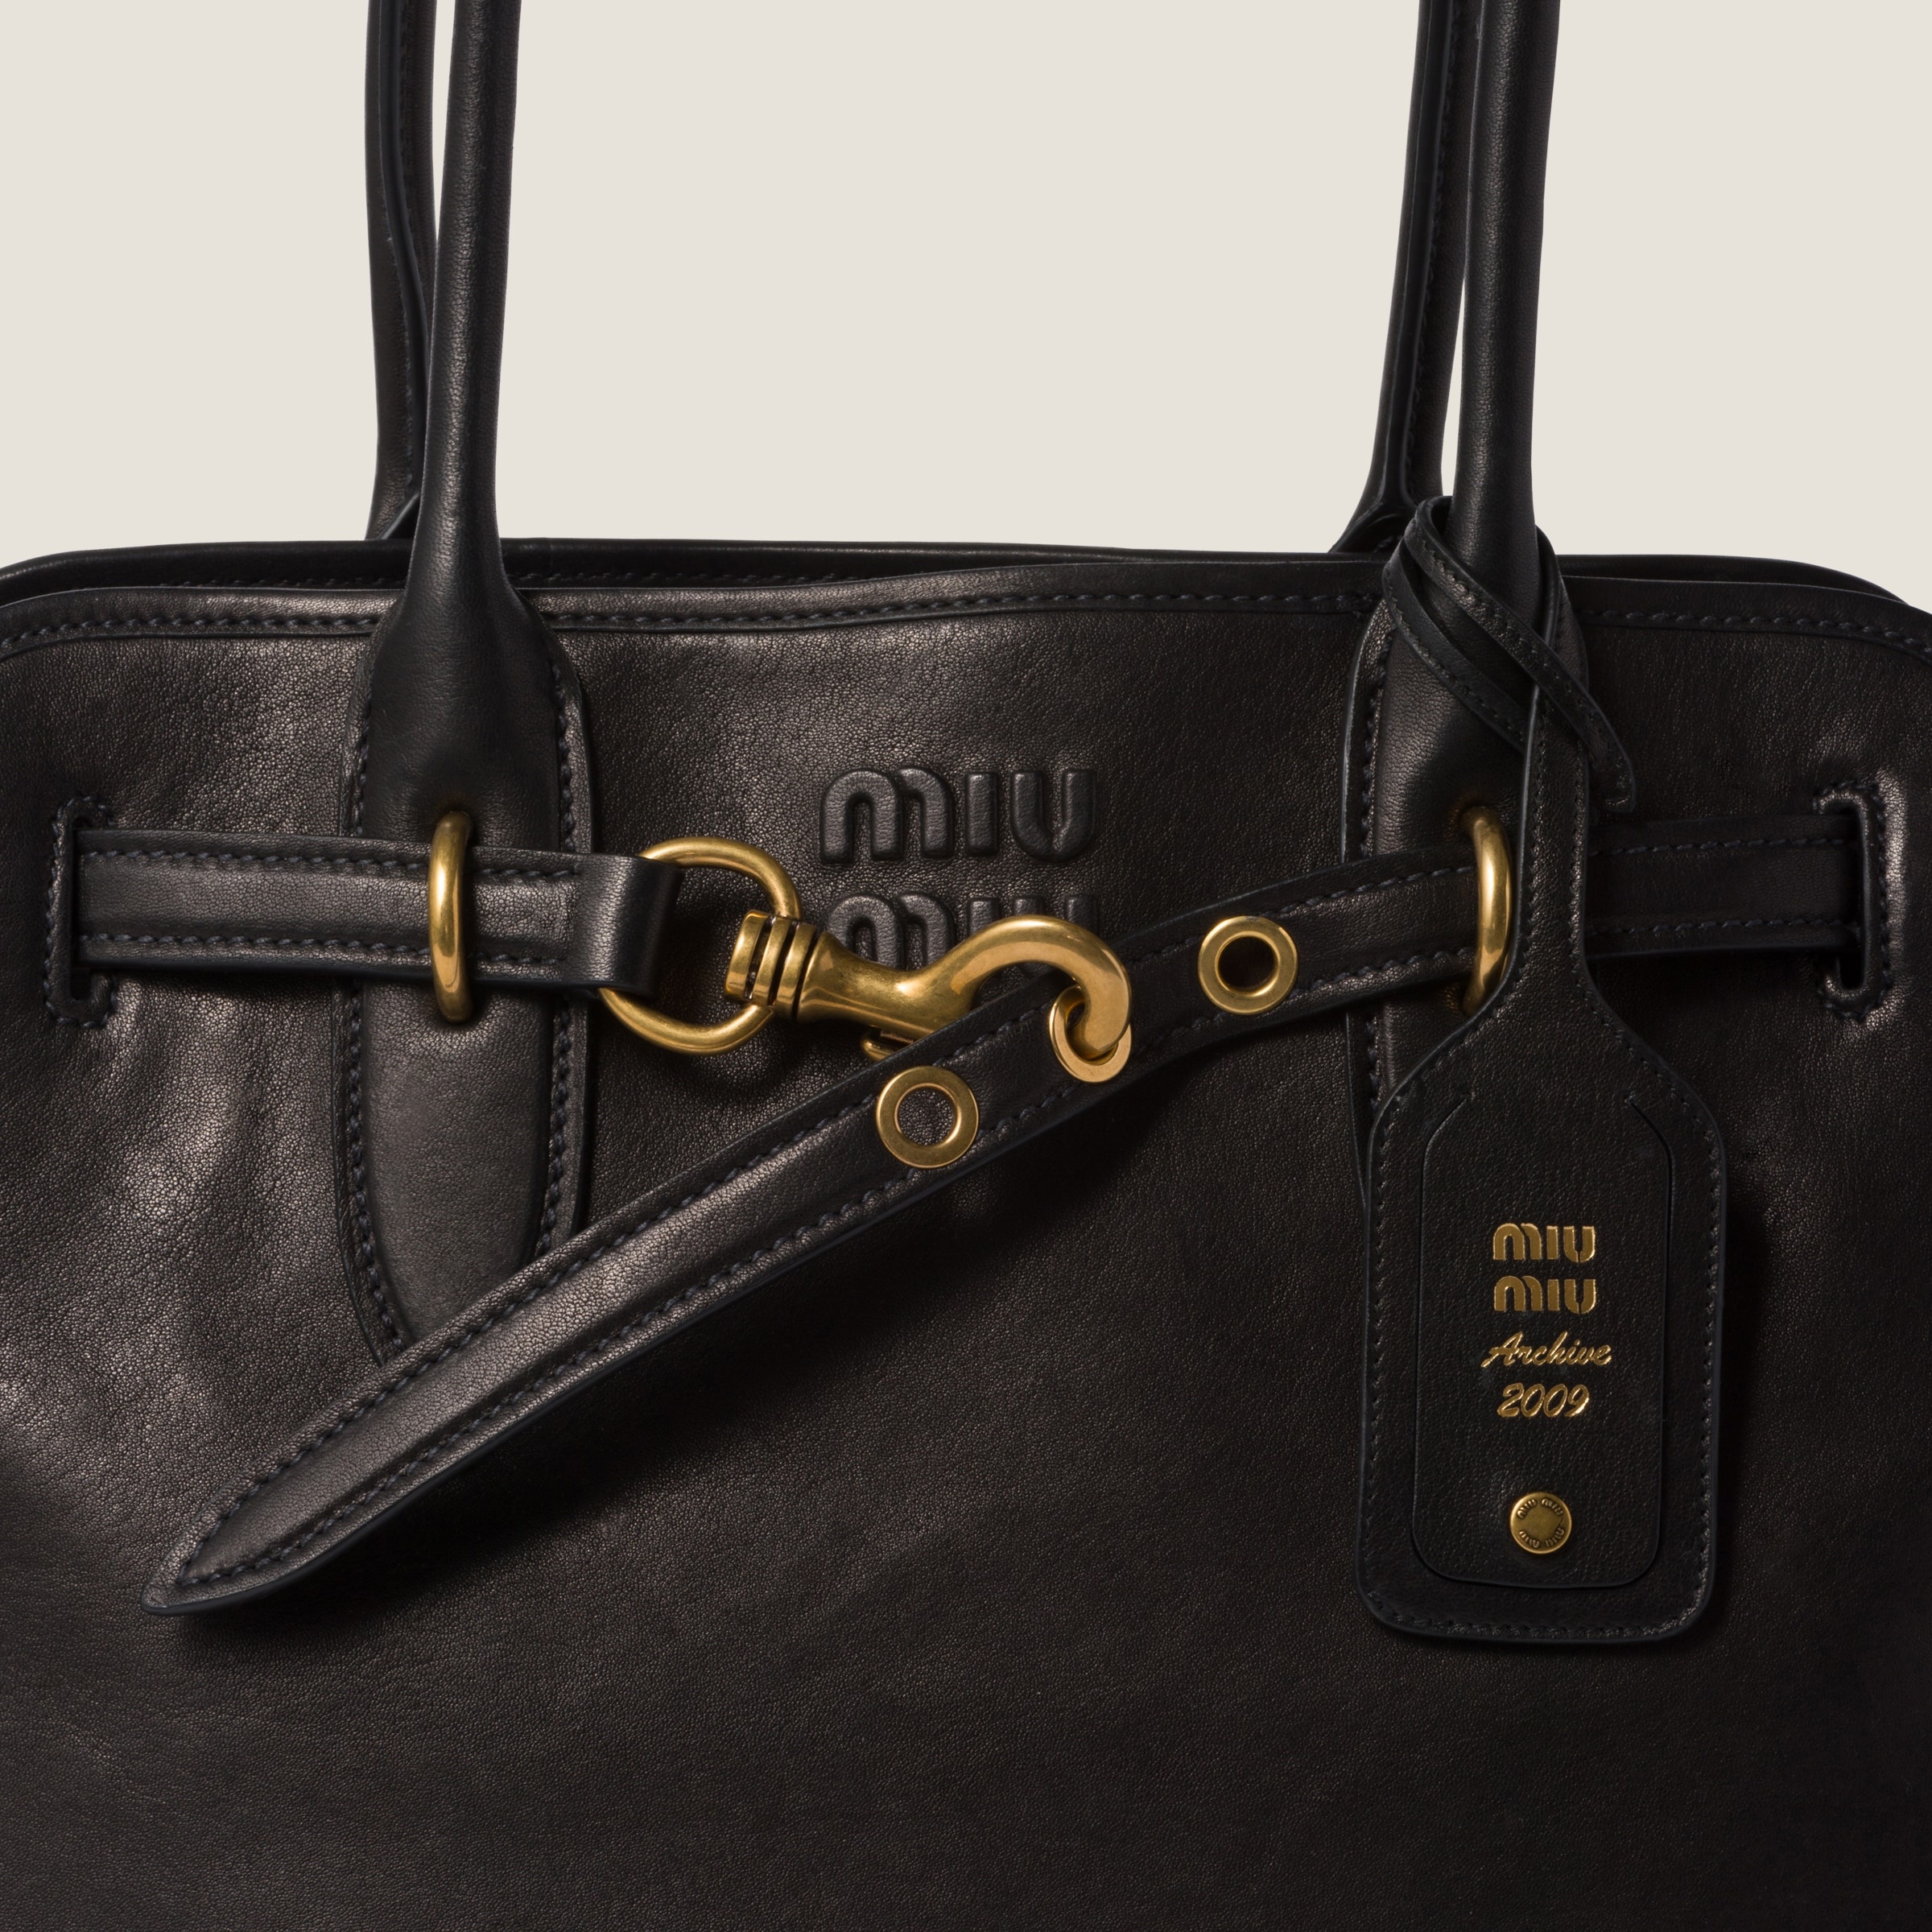 Nappa leather bag - 5